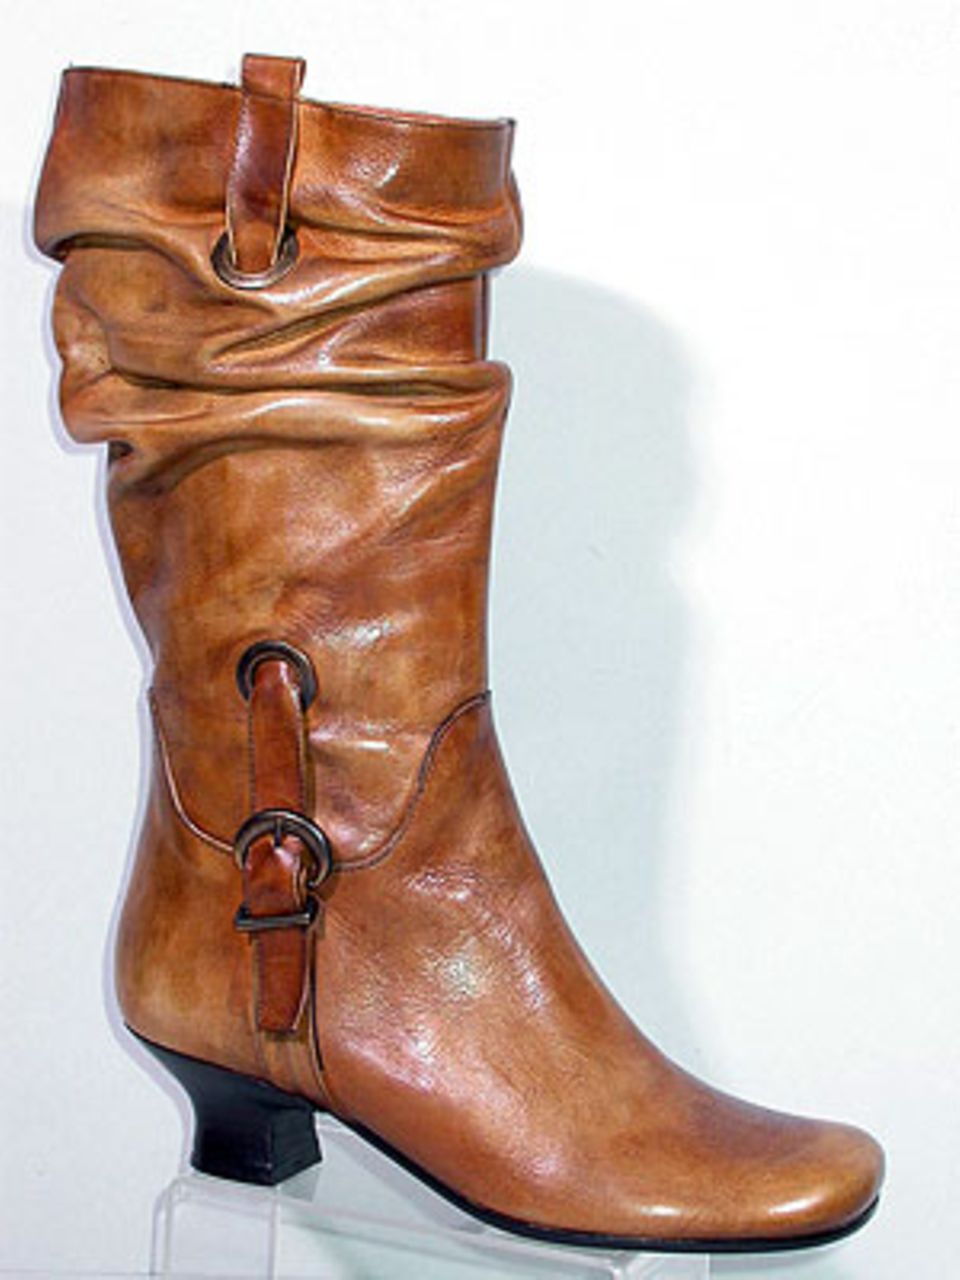 Cognacfarbener Lederstiefel mit seitlichen Durchzüge und Schnallen, von Varese über Roland-Schuhe